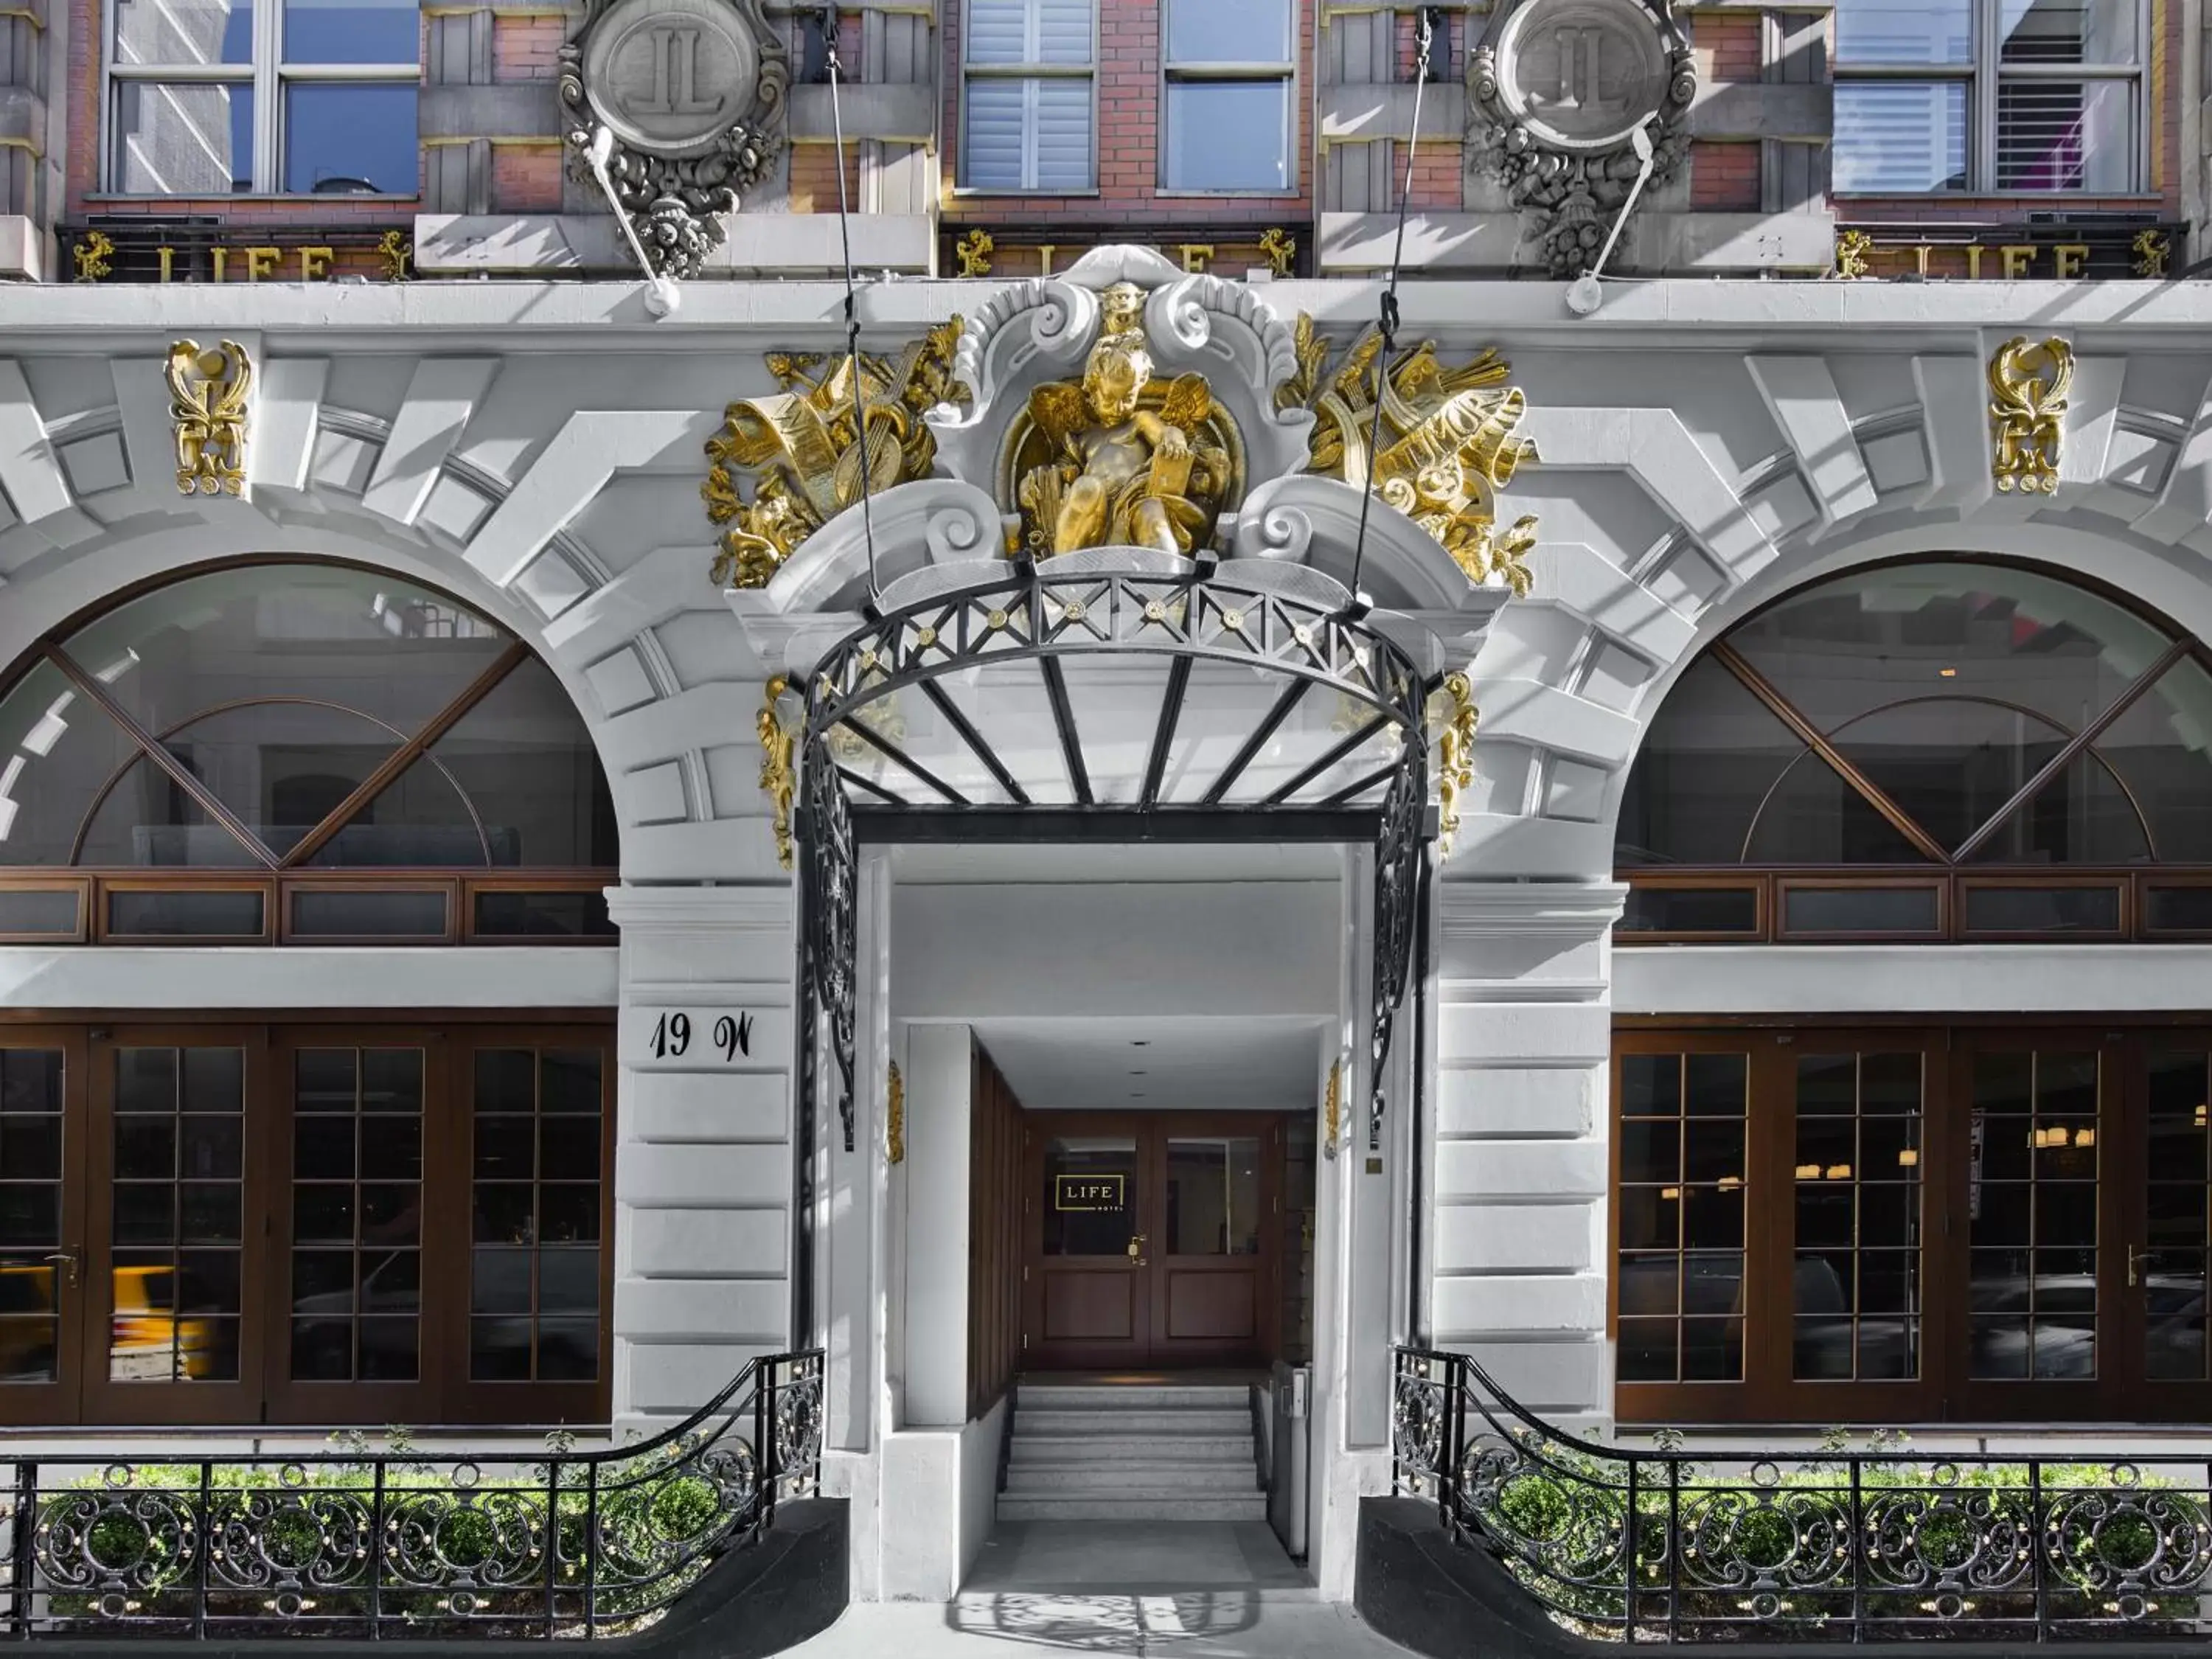 Facade/entrance in Life Hotel New York